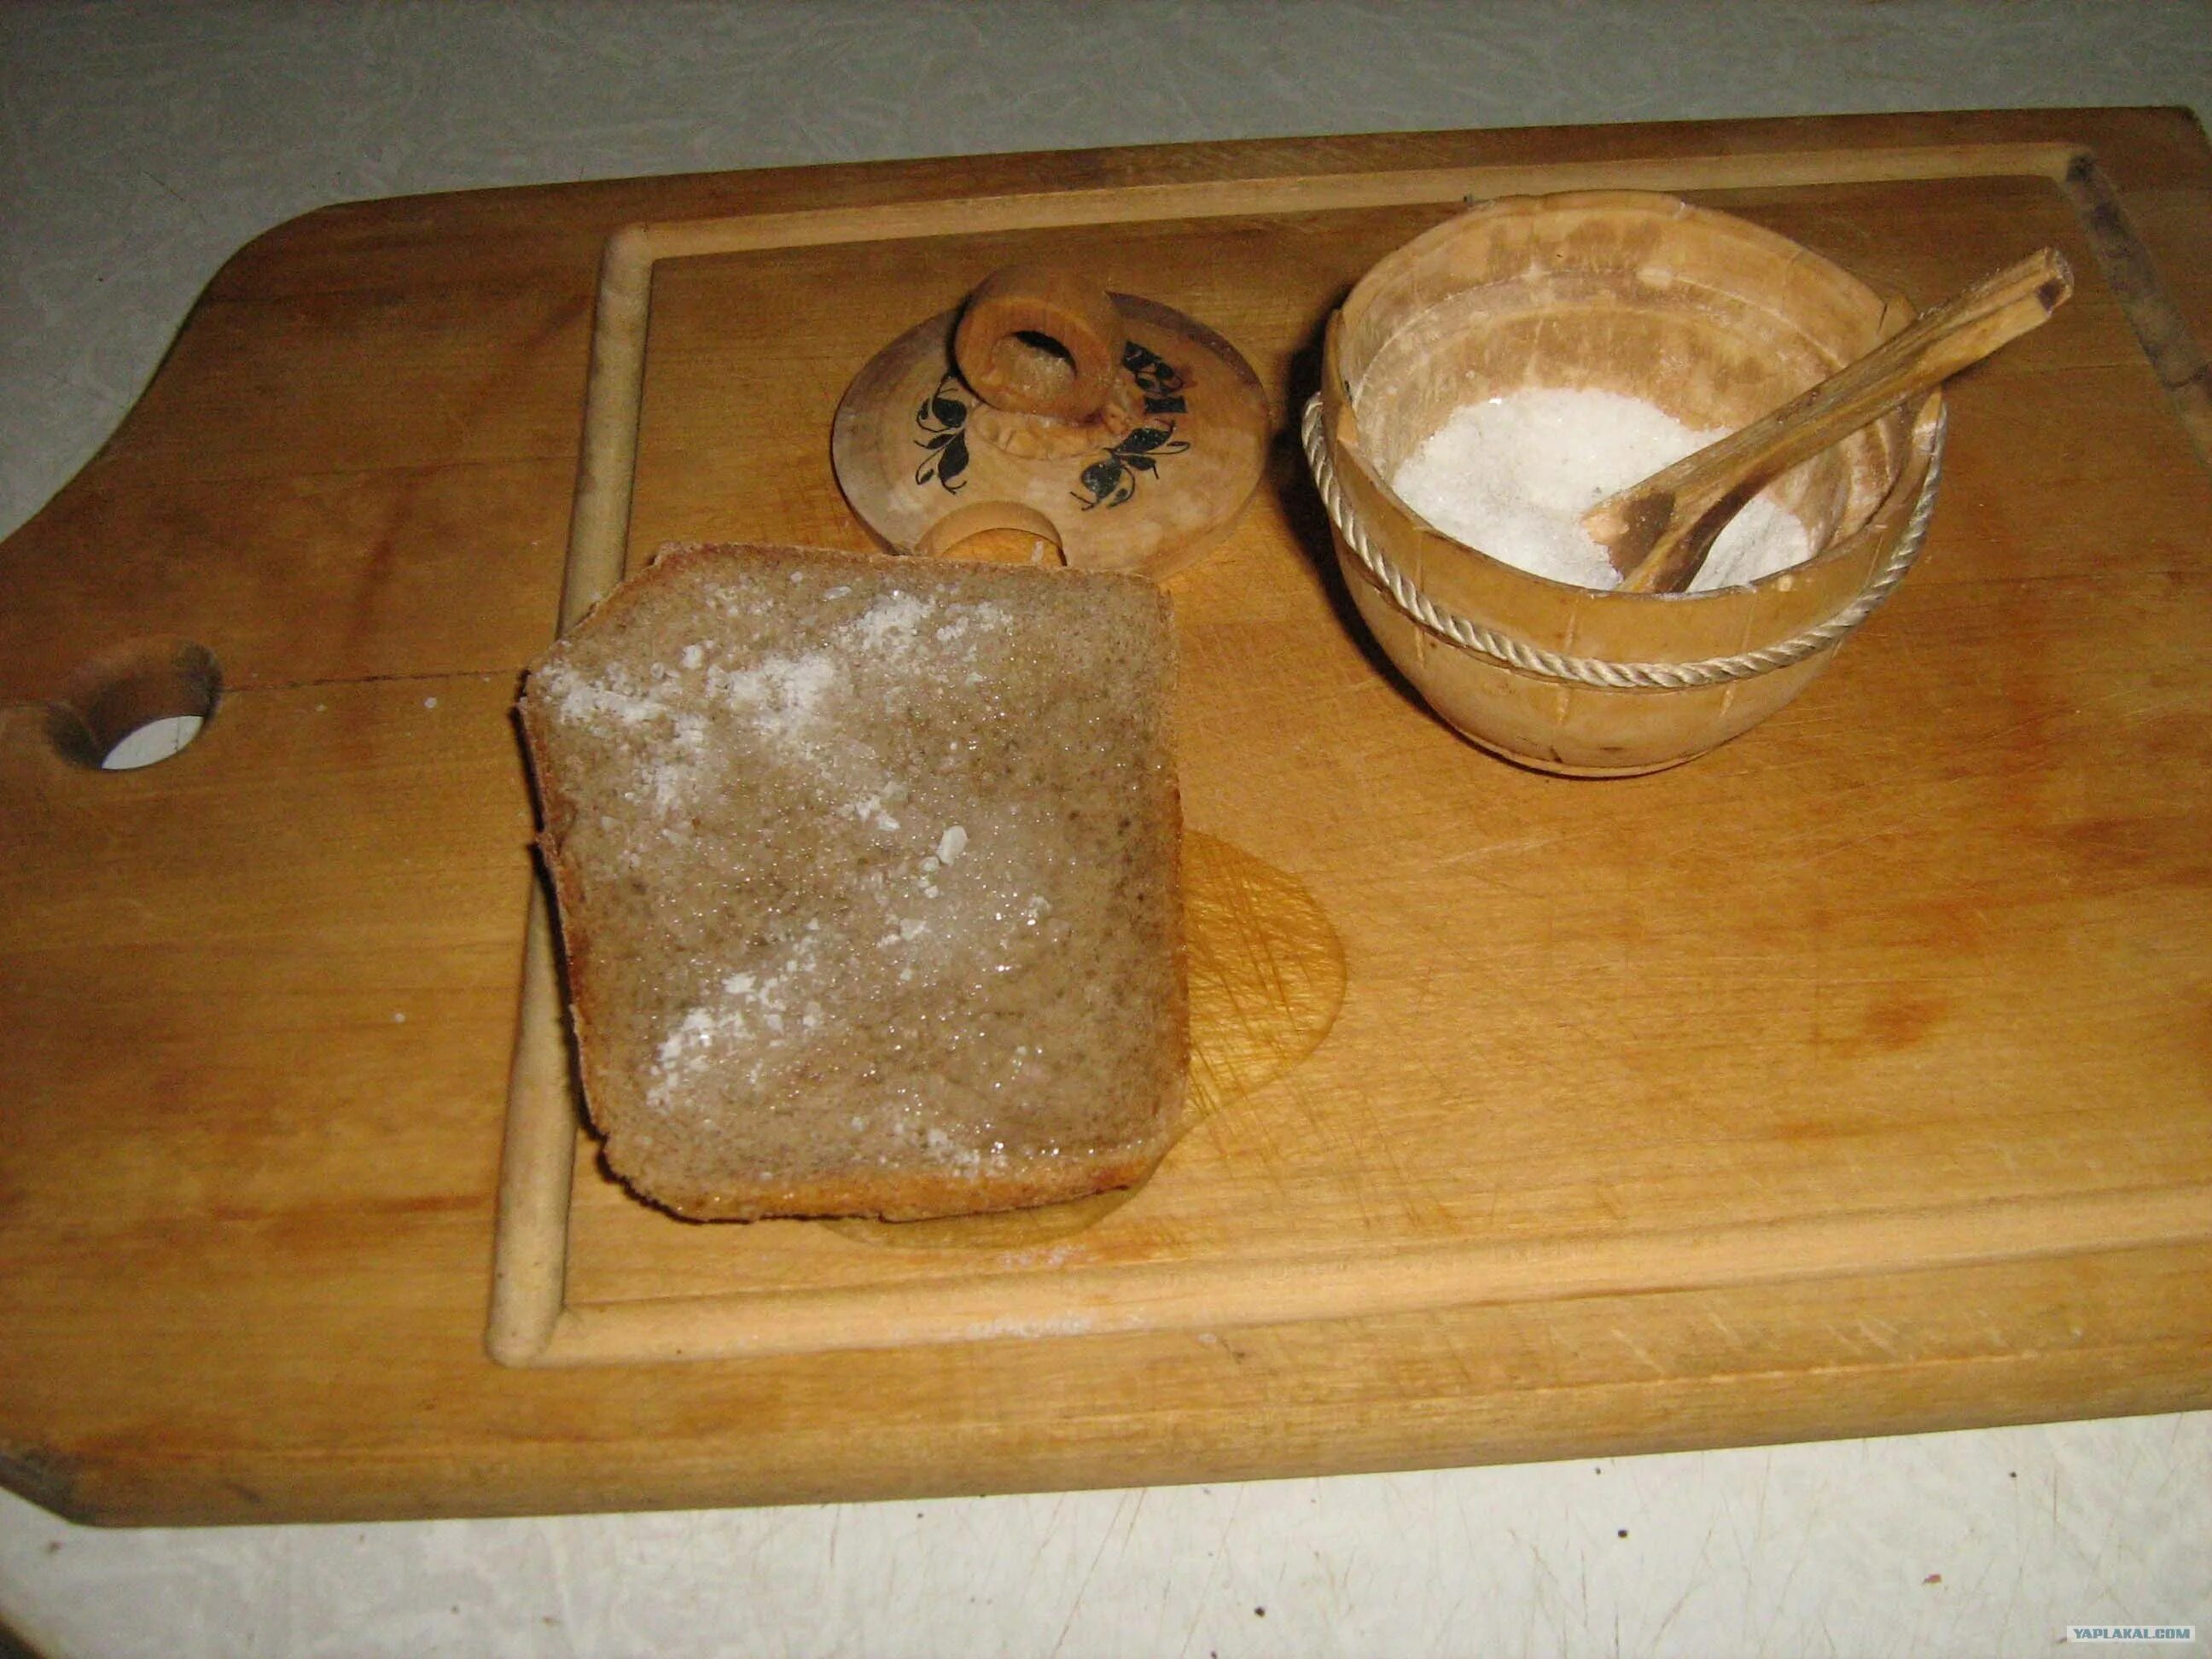 Хлеб с маслом и солью. Хлеб с подсолнечным маслом и солью. Хлеб с растительным маслом. Бутерброд с растительным маслом и солью. Щедро посыпана совершенно пусты ржаным хлебом